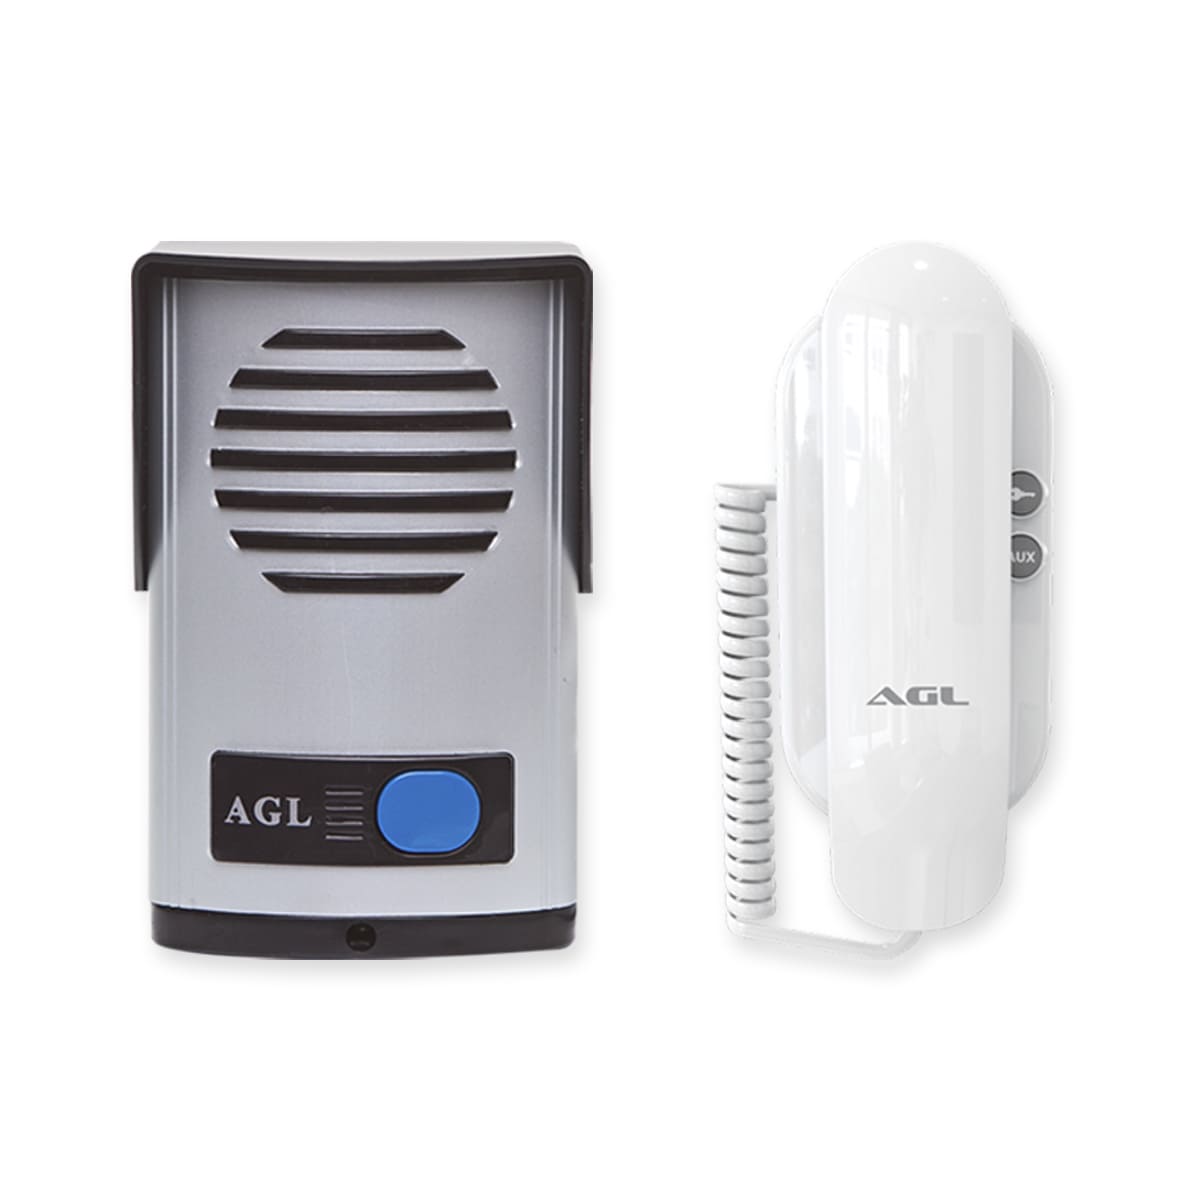 Kit Interfone Porteiro Eletrônico AGL com Fechadura Elétrica e Acionamento por Controle